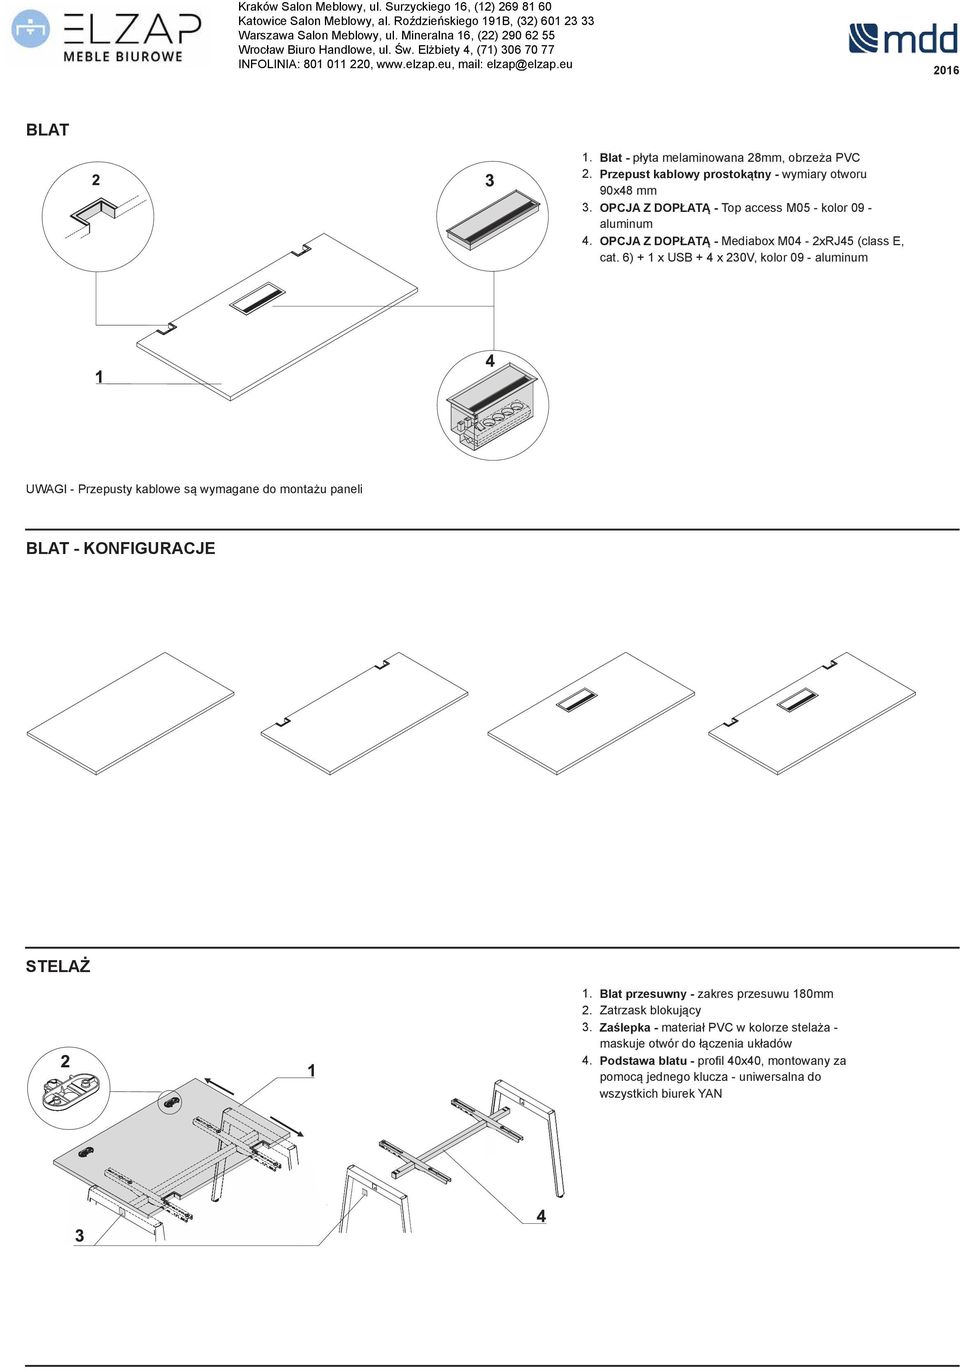 6) + x USB + 4 x 230V, kolor 09 - aluminum - Przepusty kablowe s" wymagane do monta!u paneli BLAT - KONFIGURACJE STELA#.